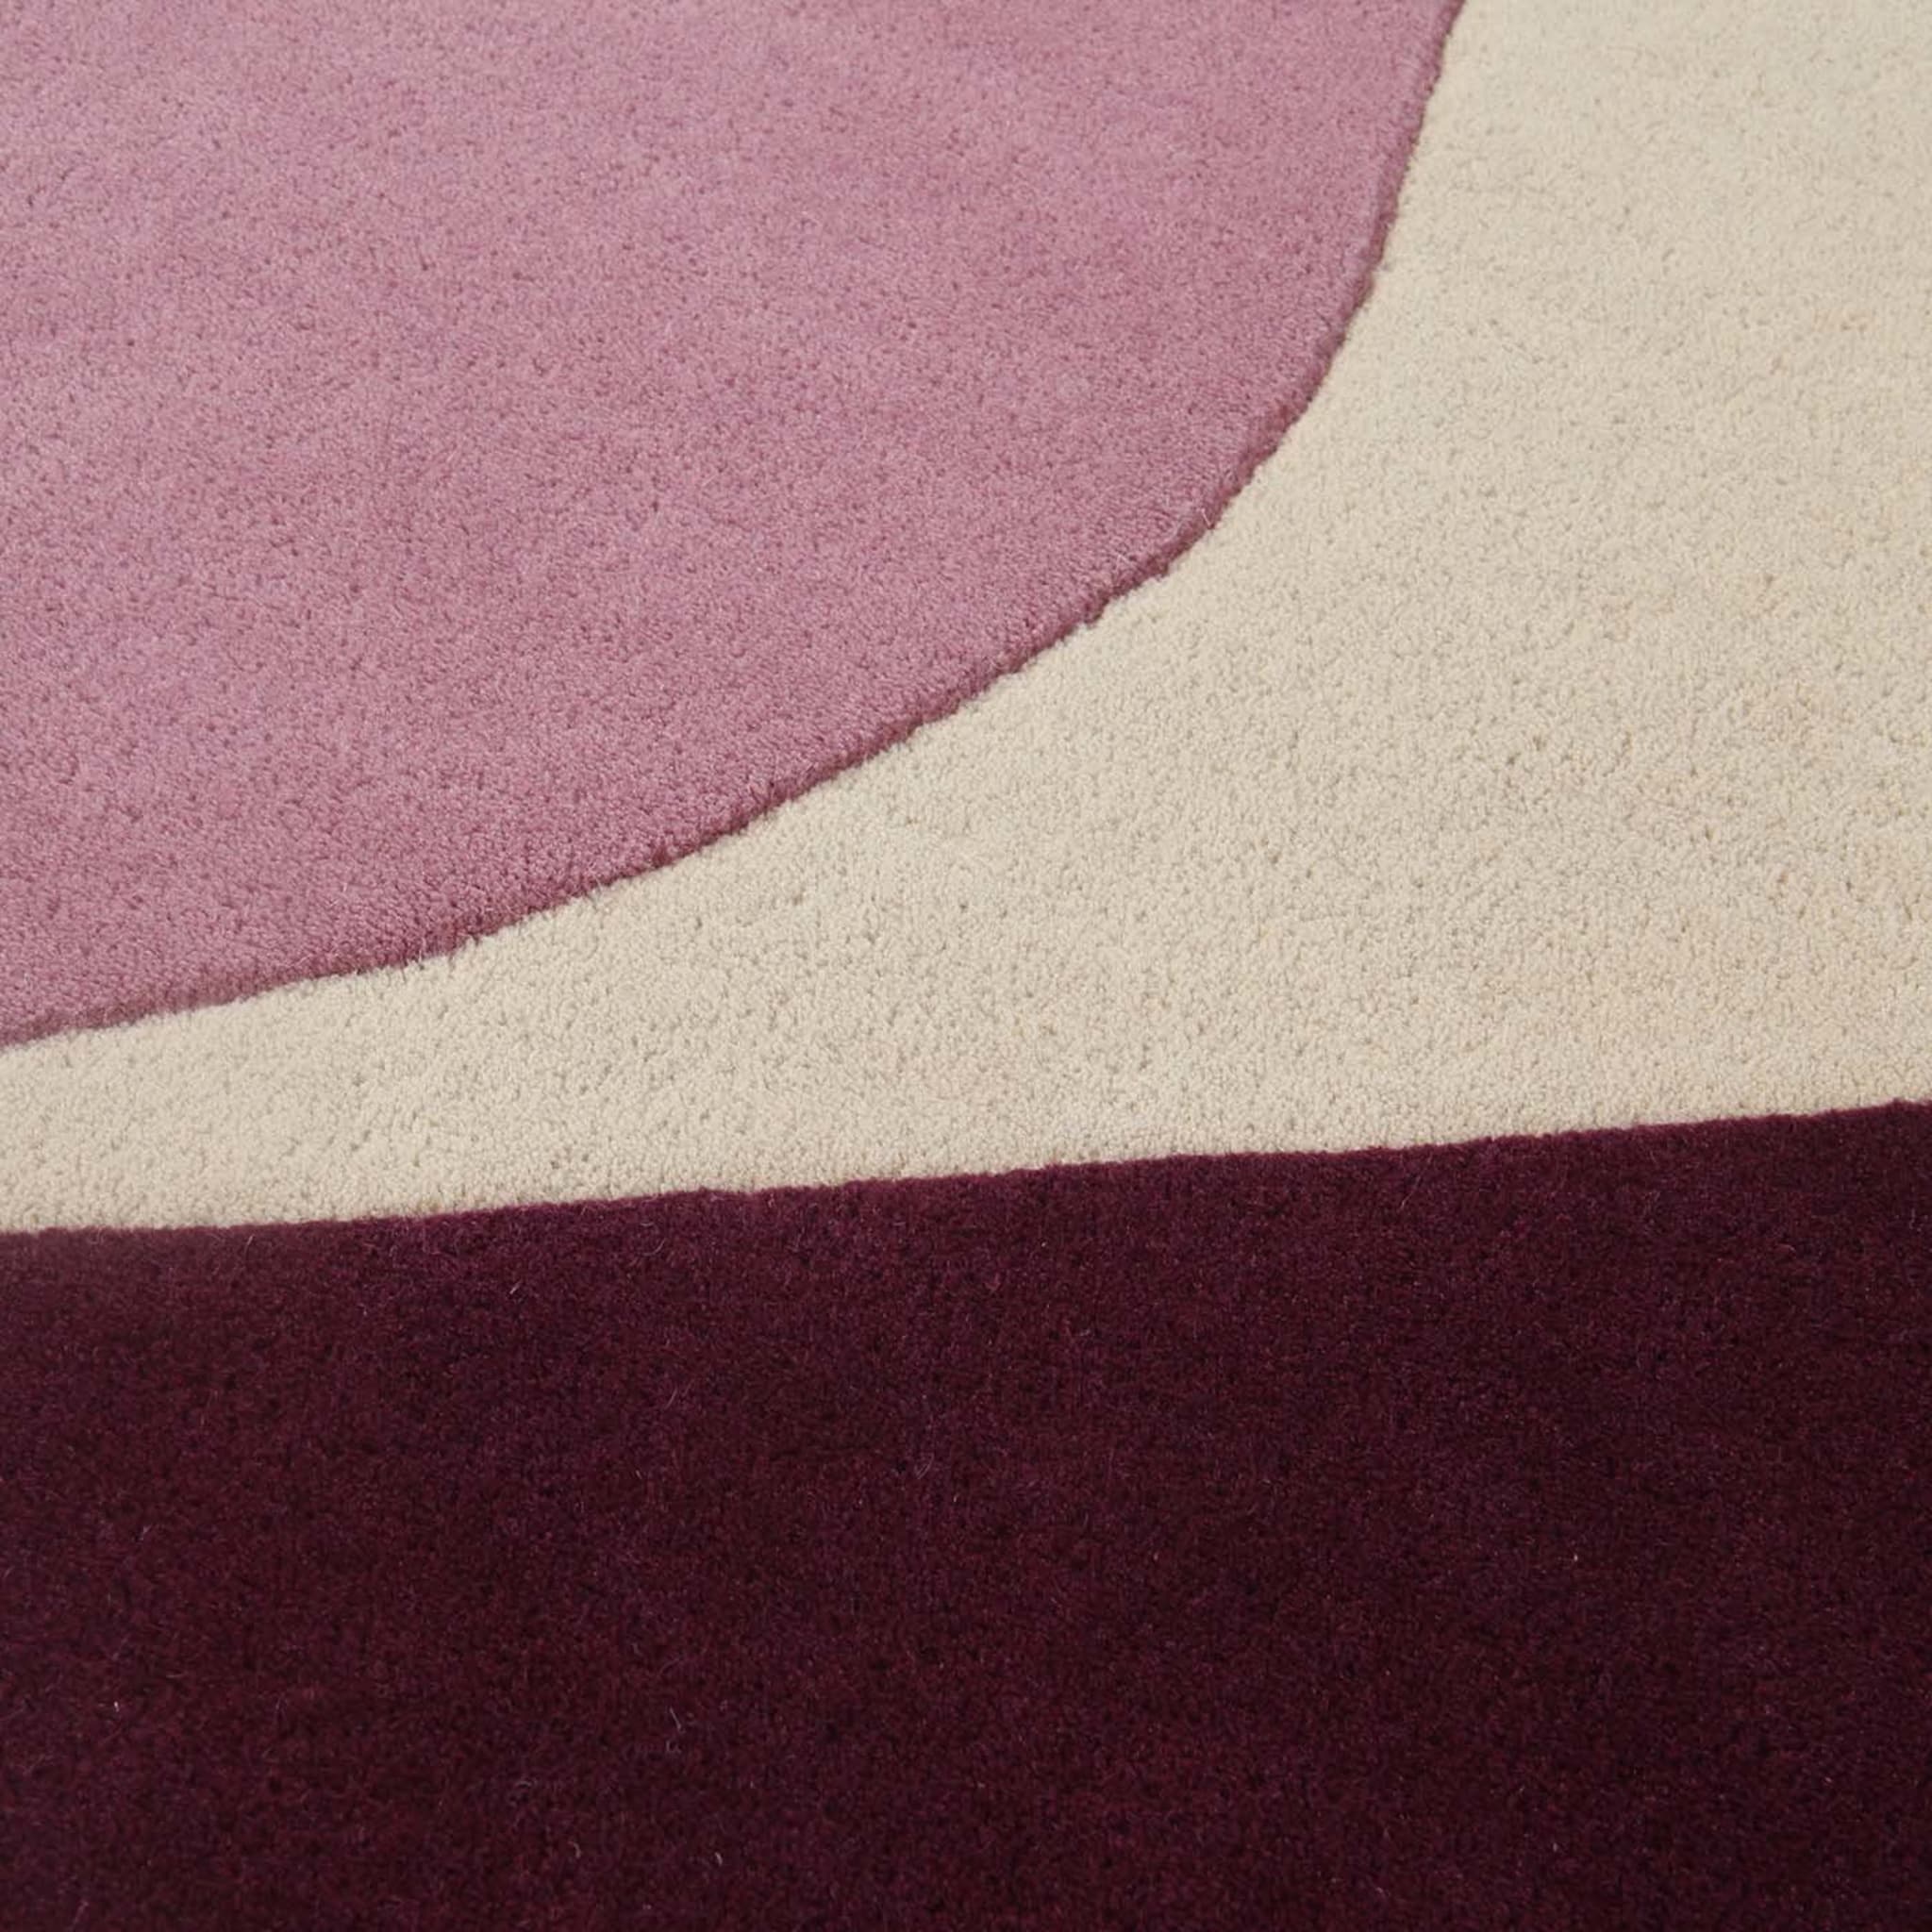 JC-7 Isola Purple Carpet by Joe Colombo - Alternative view 1